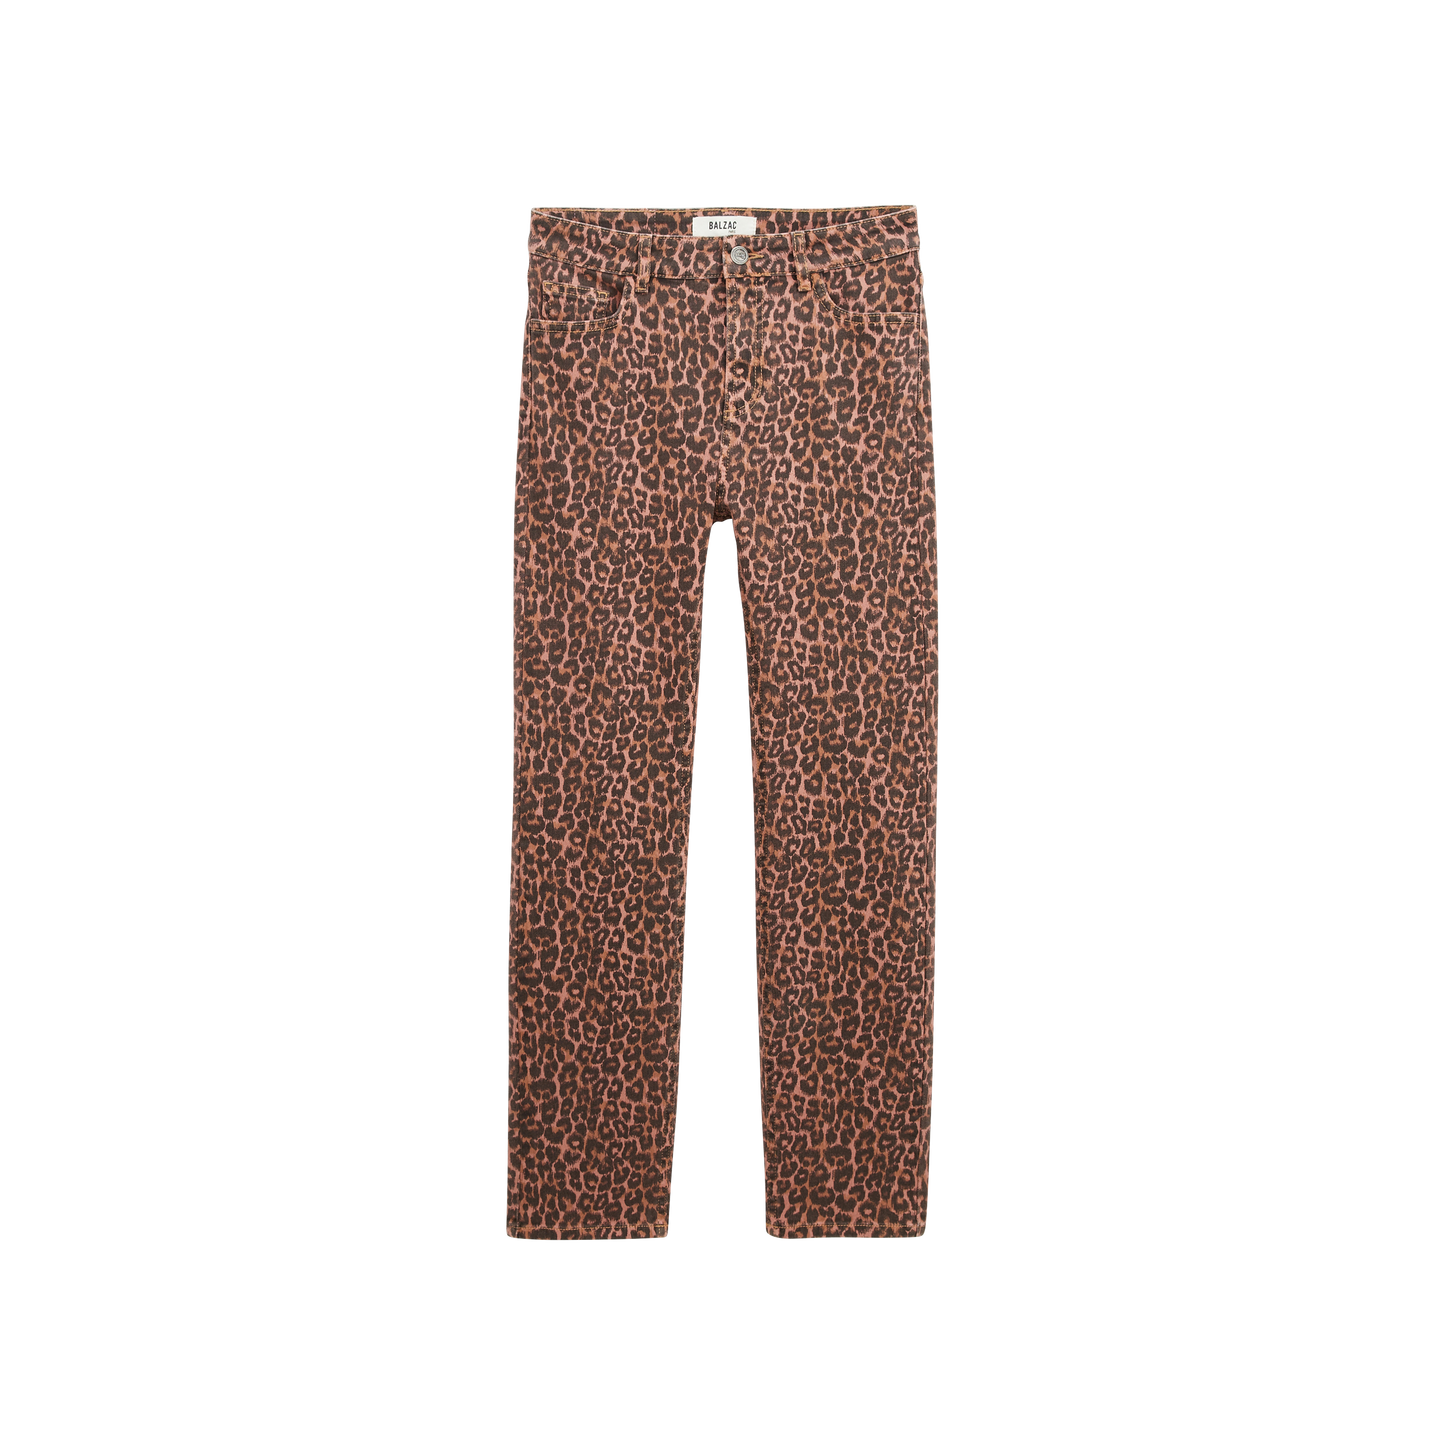 Coffee leopard Austin jeans